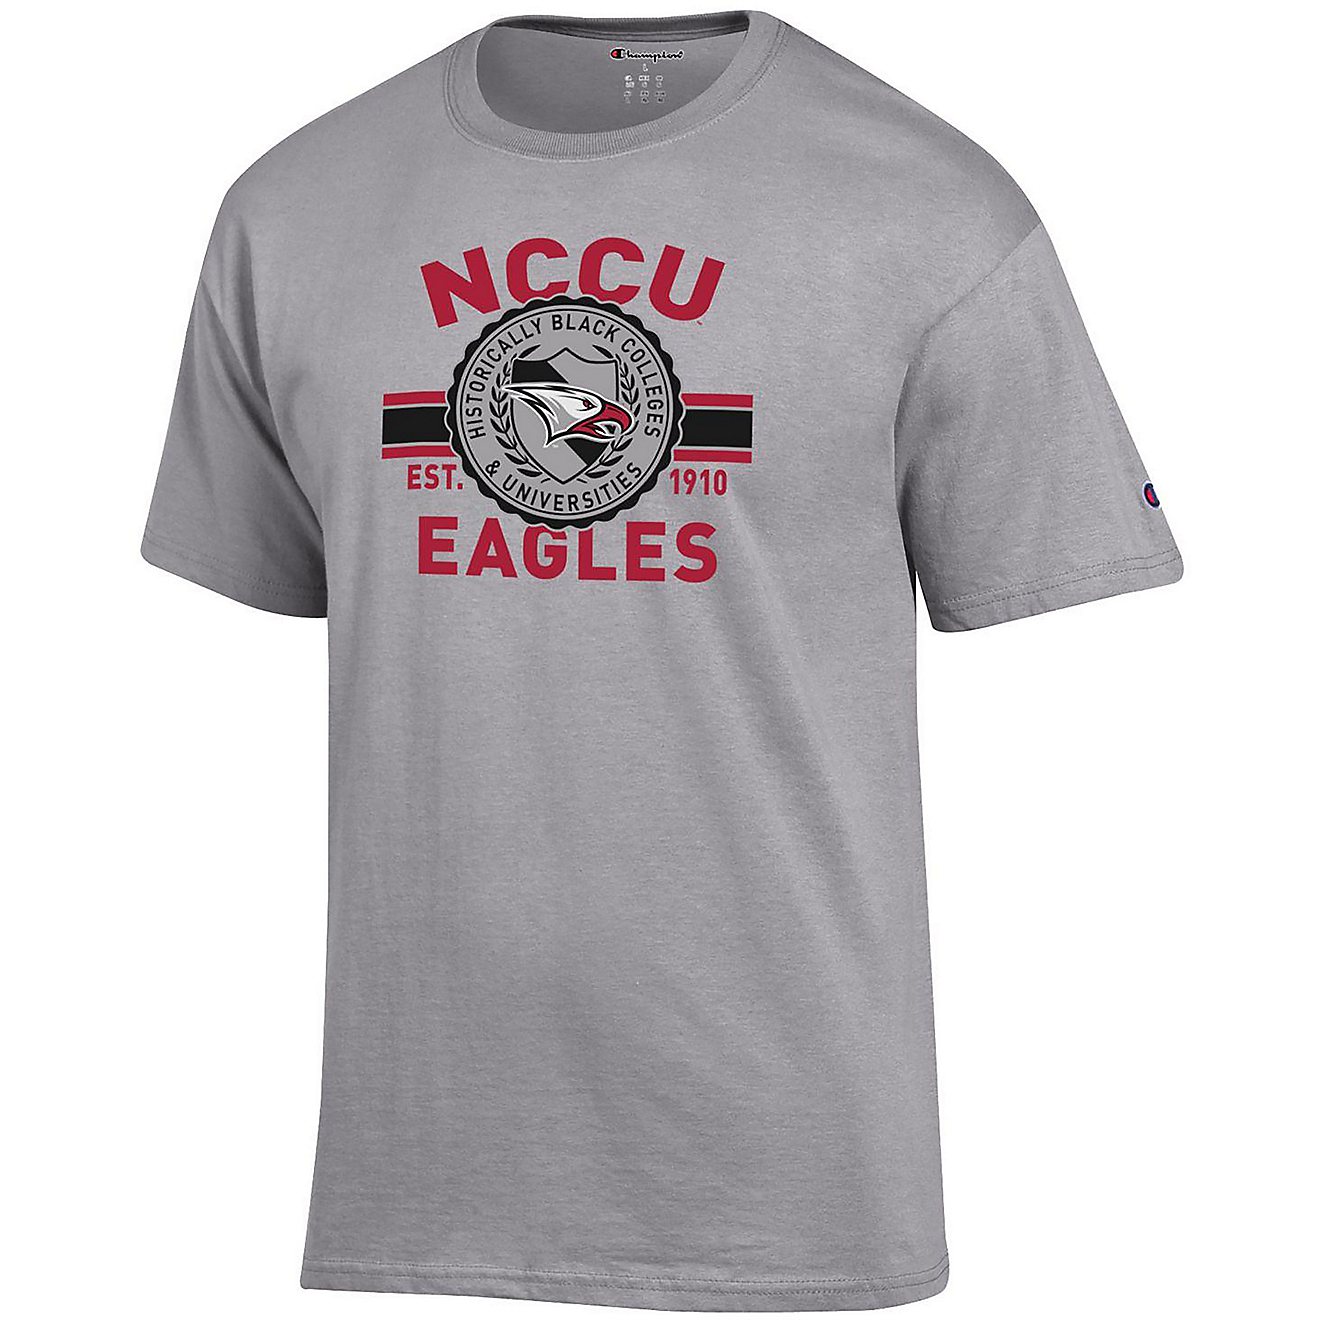 NORTH CAROLINA CENTRAL UNIVERSITY  T shirt NCCU EAGLES HBCU College Tee